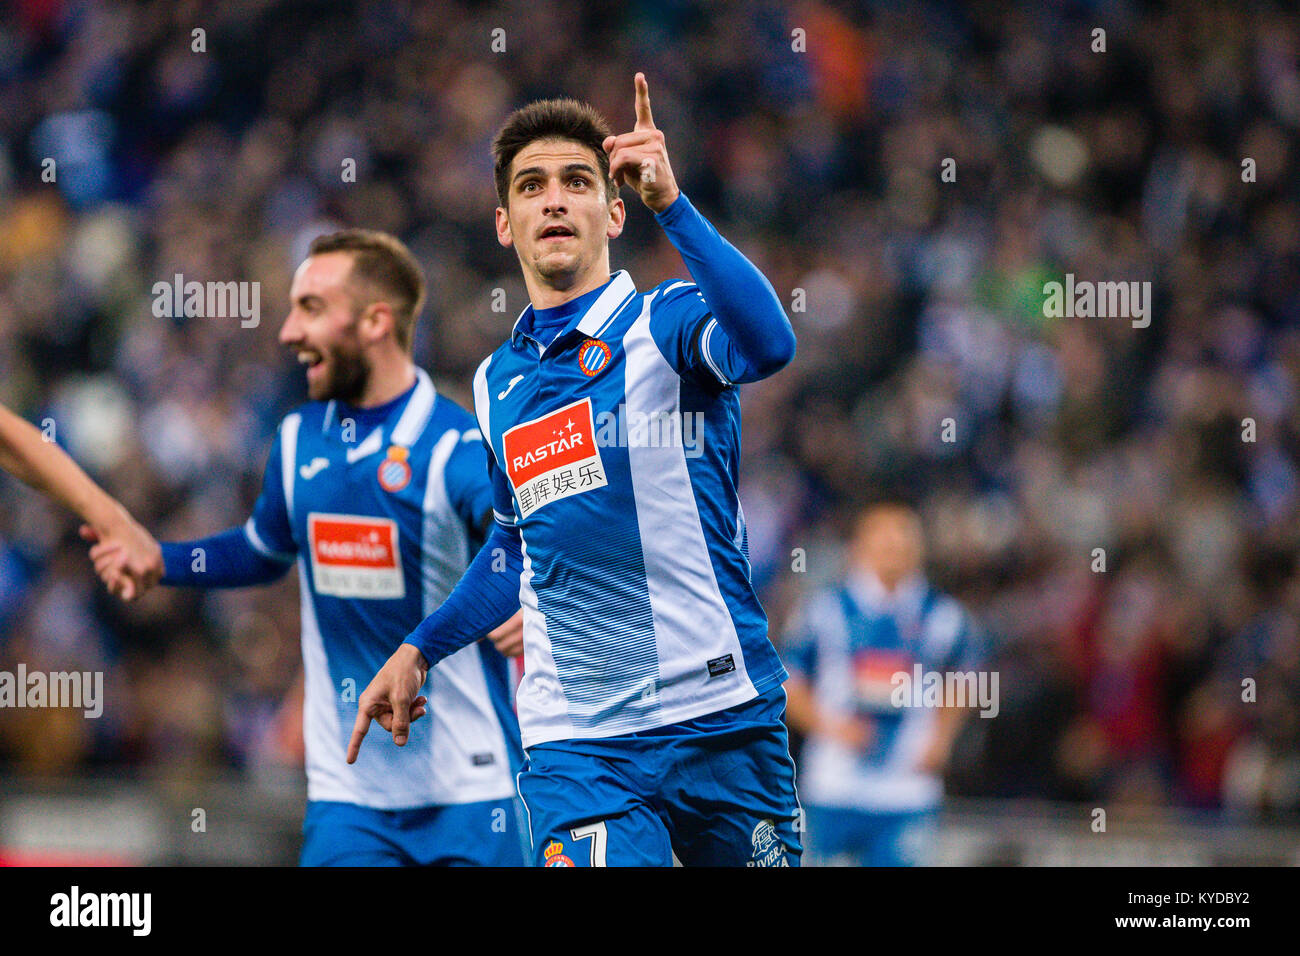 espanyol forward gerard 7 celebrates scoring the goal fotografías e imágenes de alta resolución - Alamy